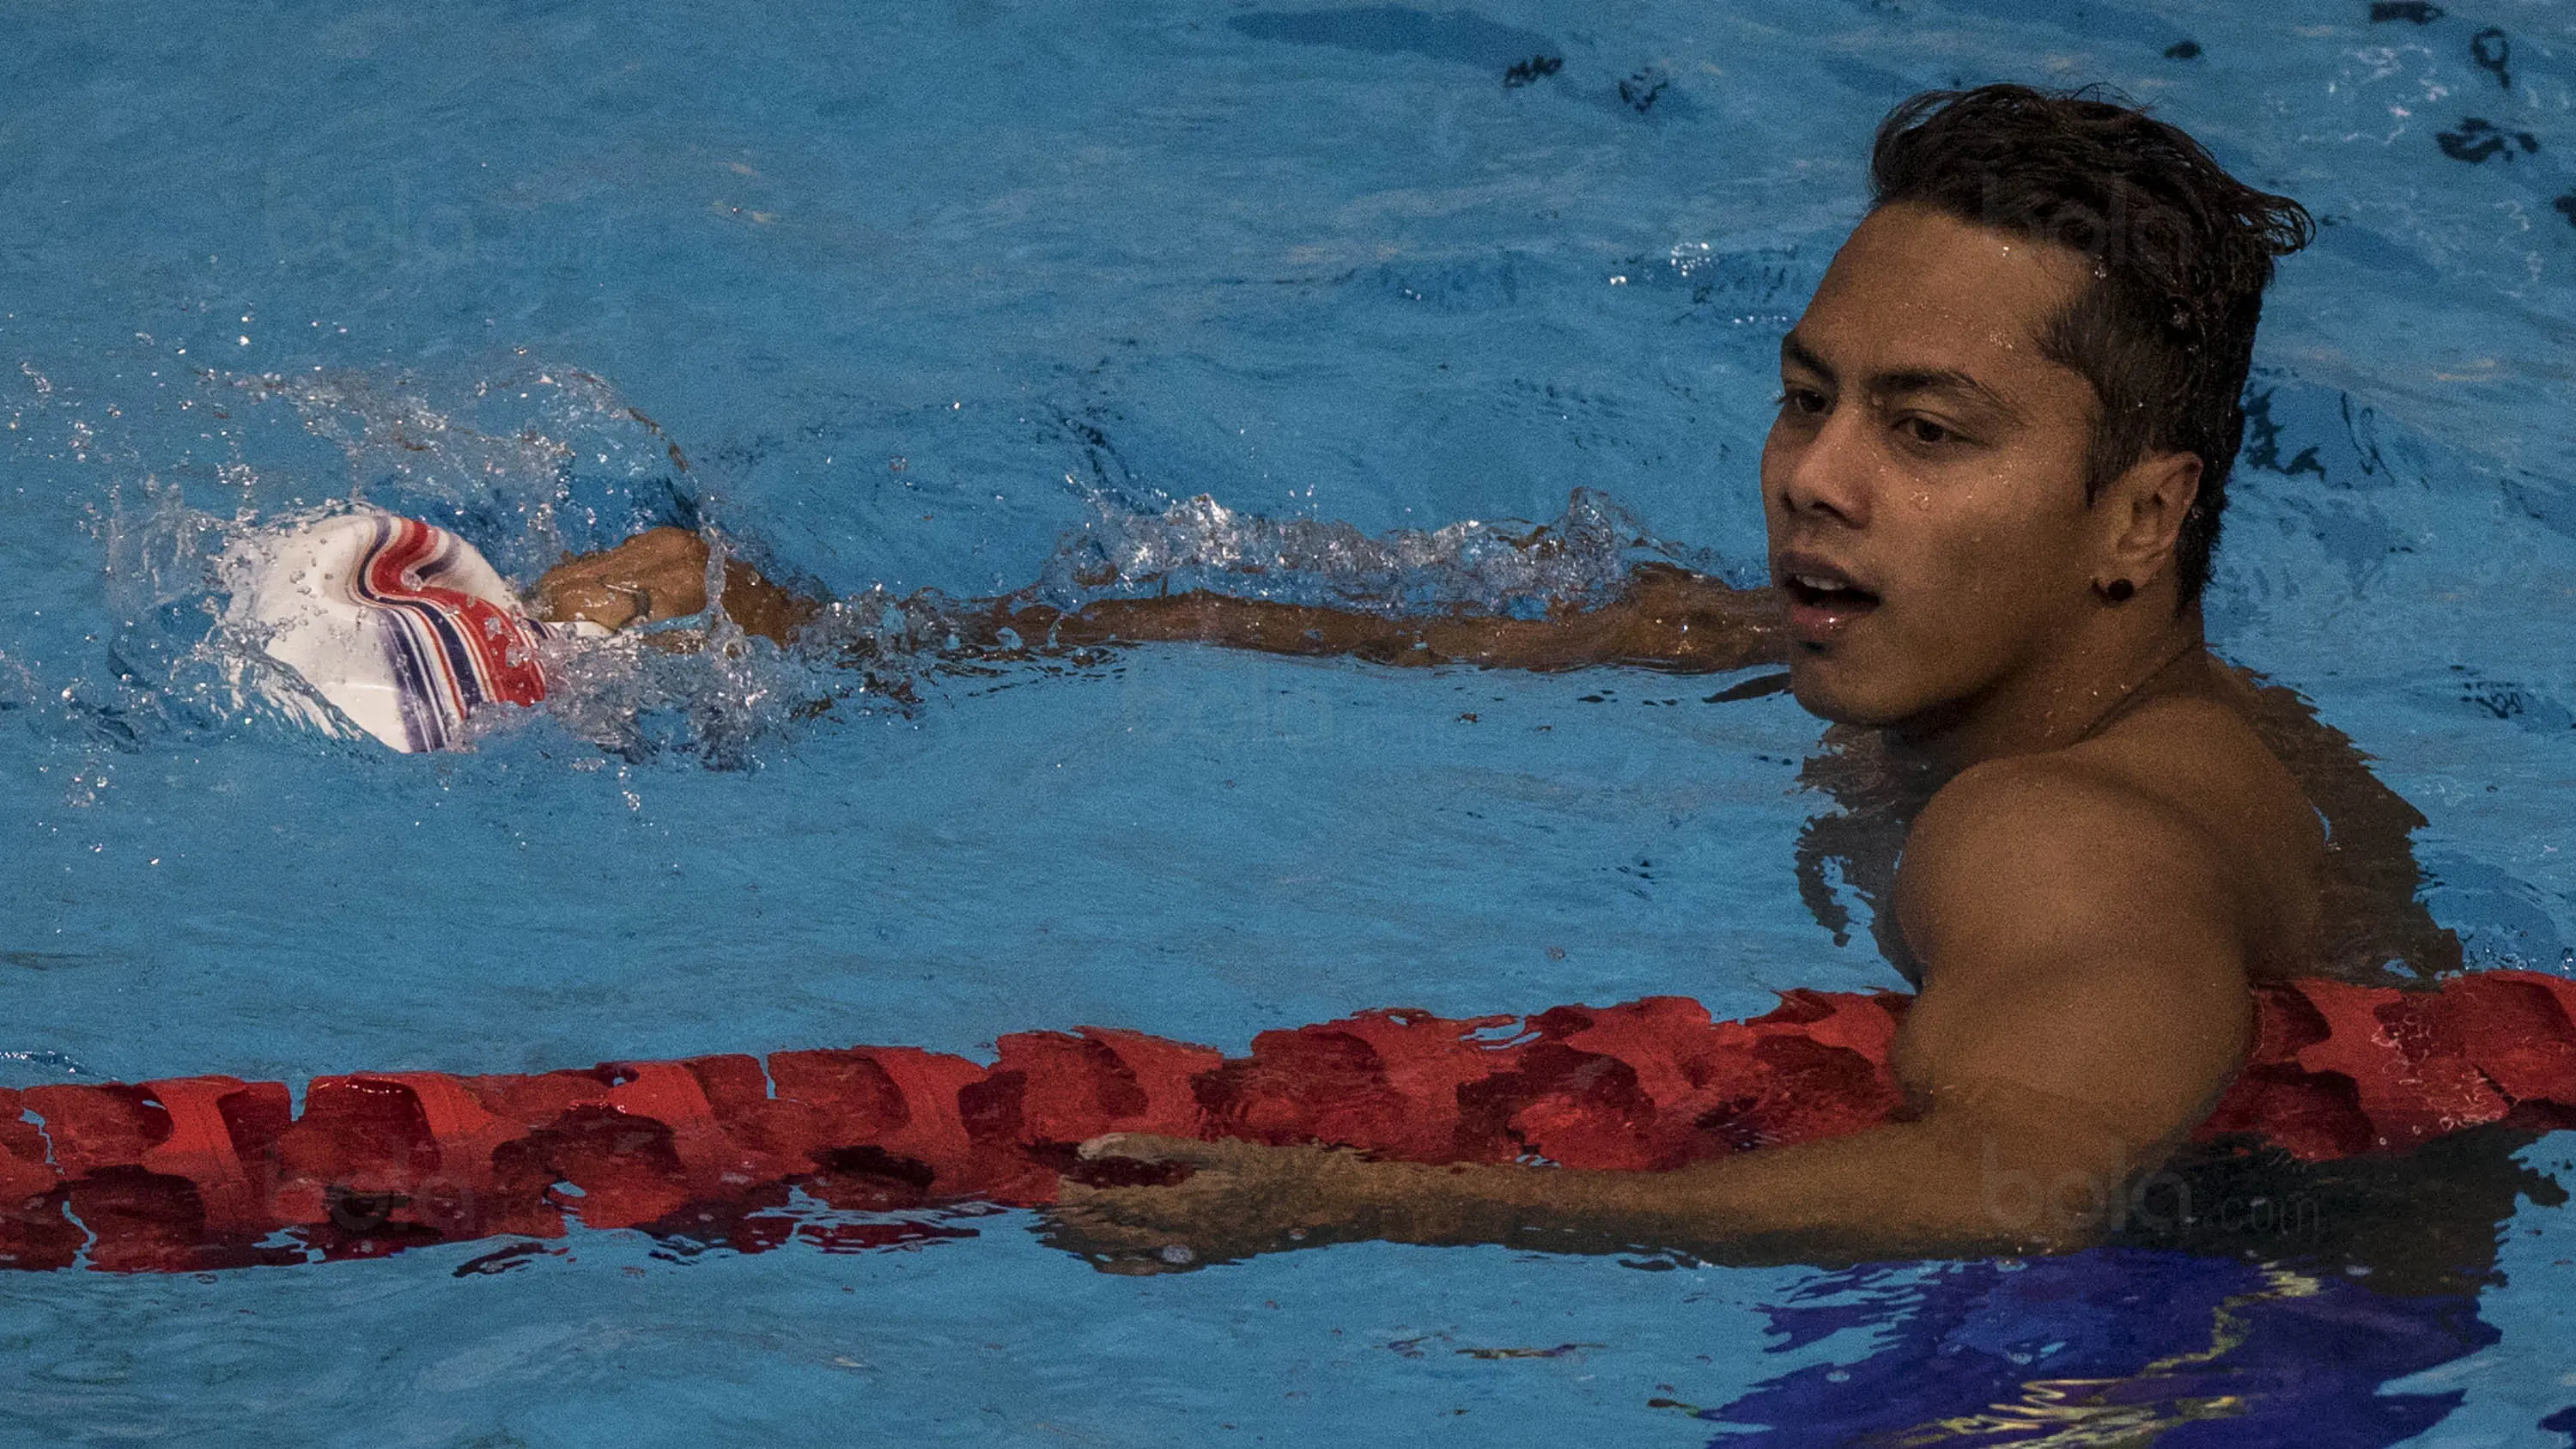 Perenang Indonesia Siman Sudartawa akan tampil pada ajang CIMB Niaga Indonesia Open Aquatic Championship 2017, 5-15 Desember. (Bola.com/Vitalis Yogi Trisna)